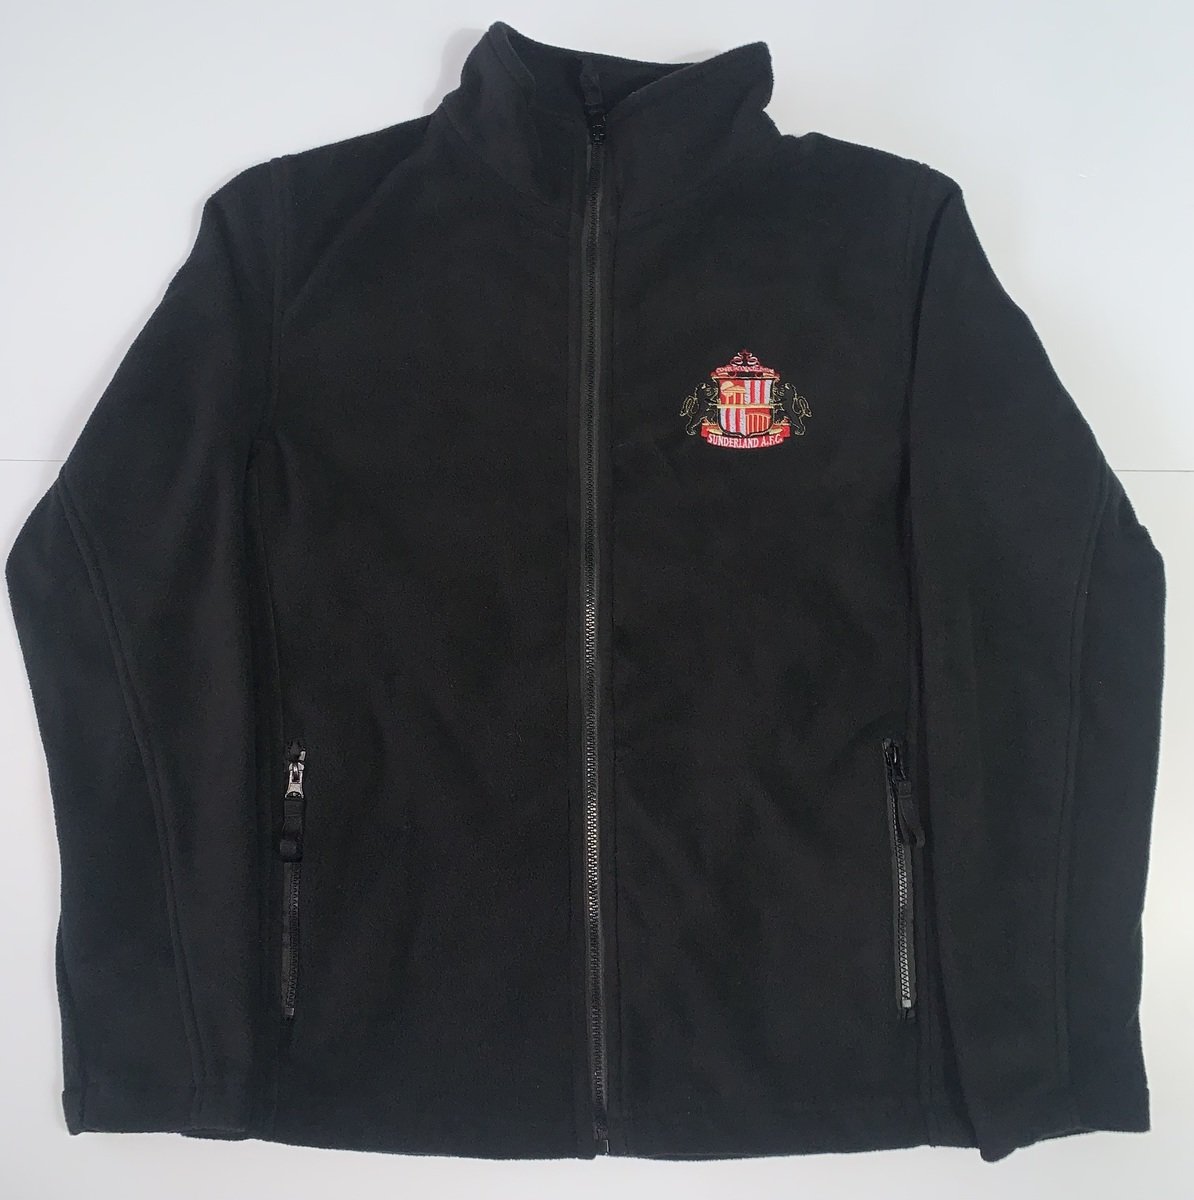 Buy the Adult Aspire Fleece Jacket online at Sunderland AFC Store